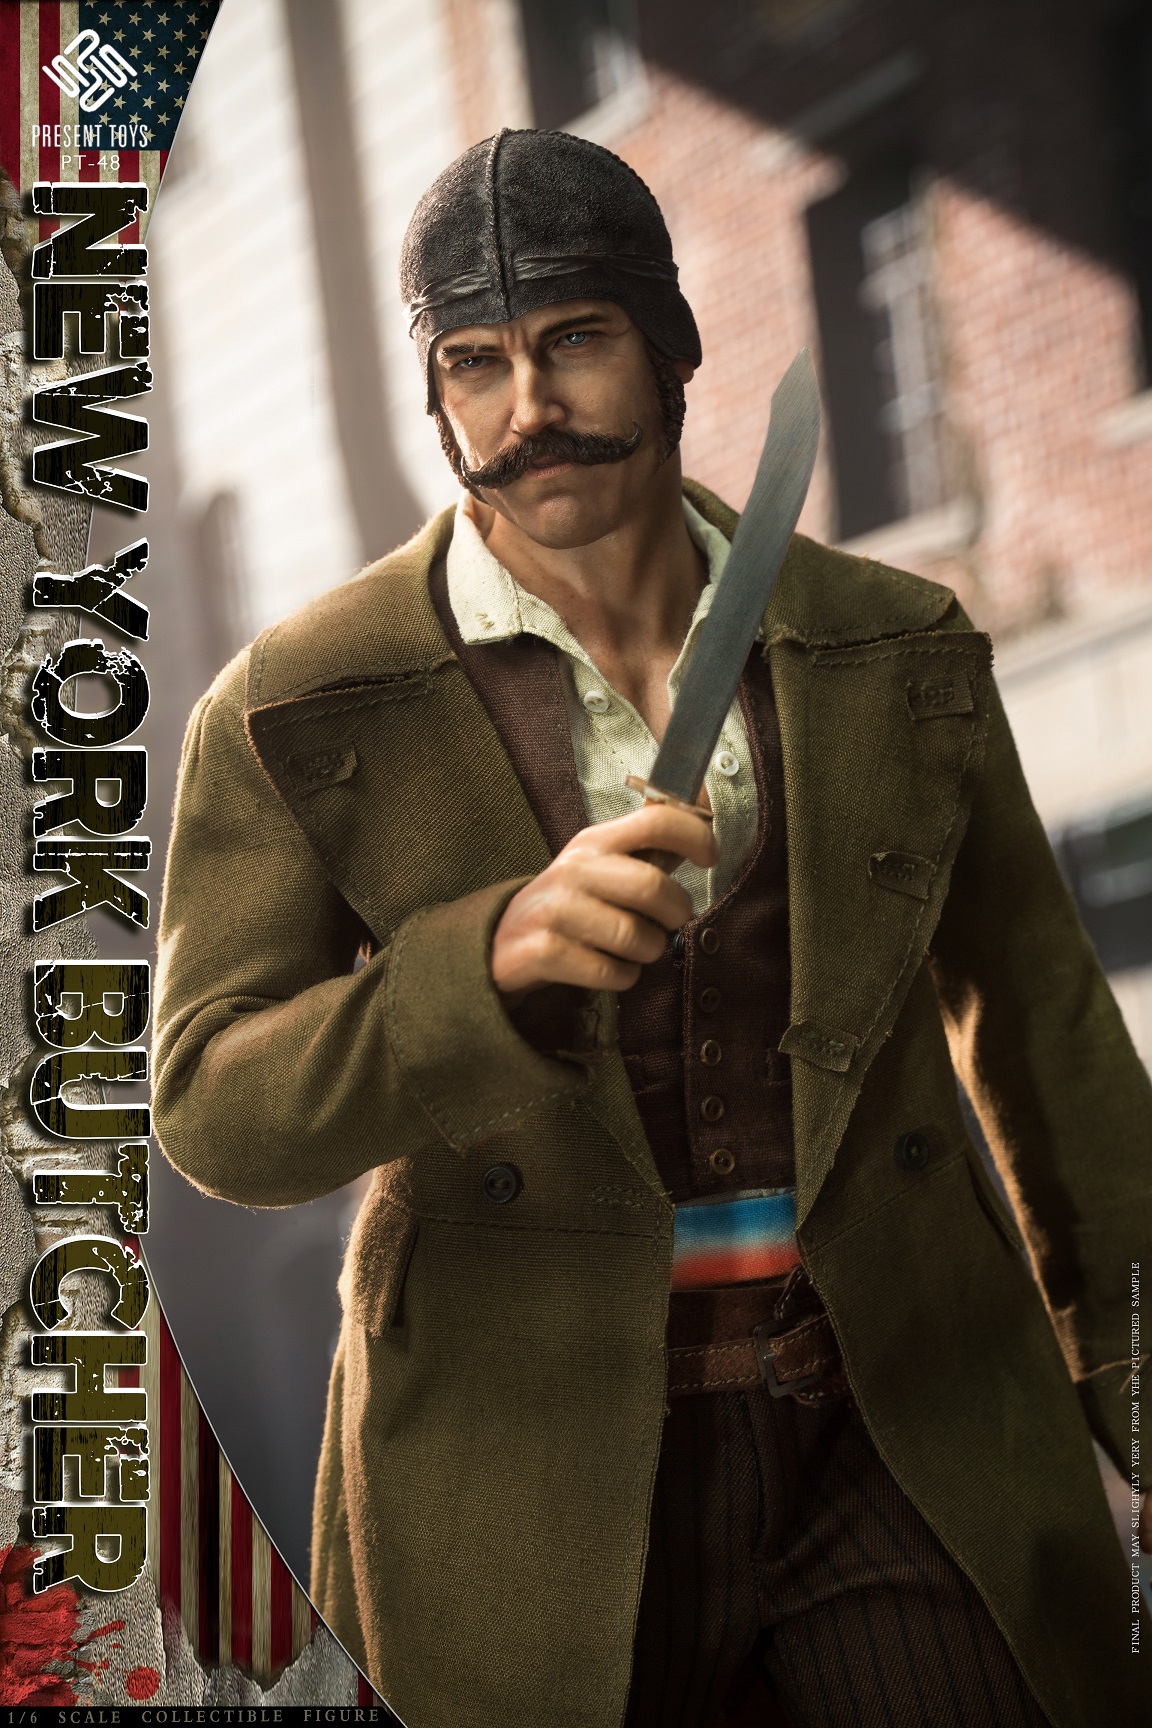 New York Butcher - Brown coat Version